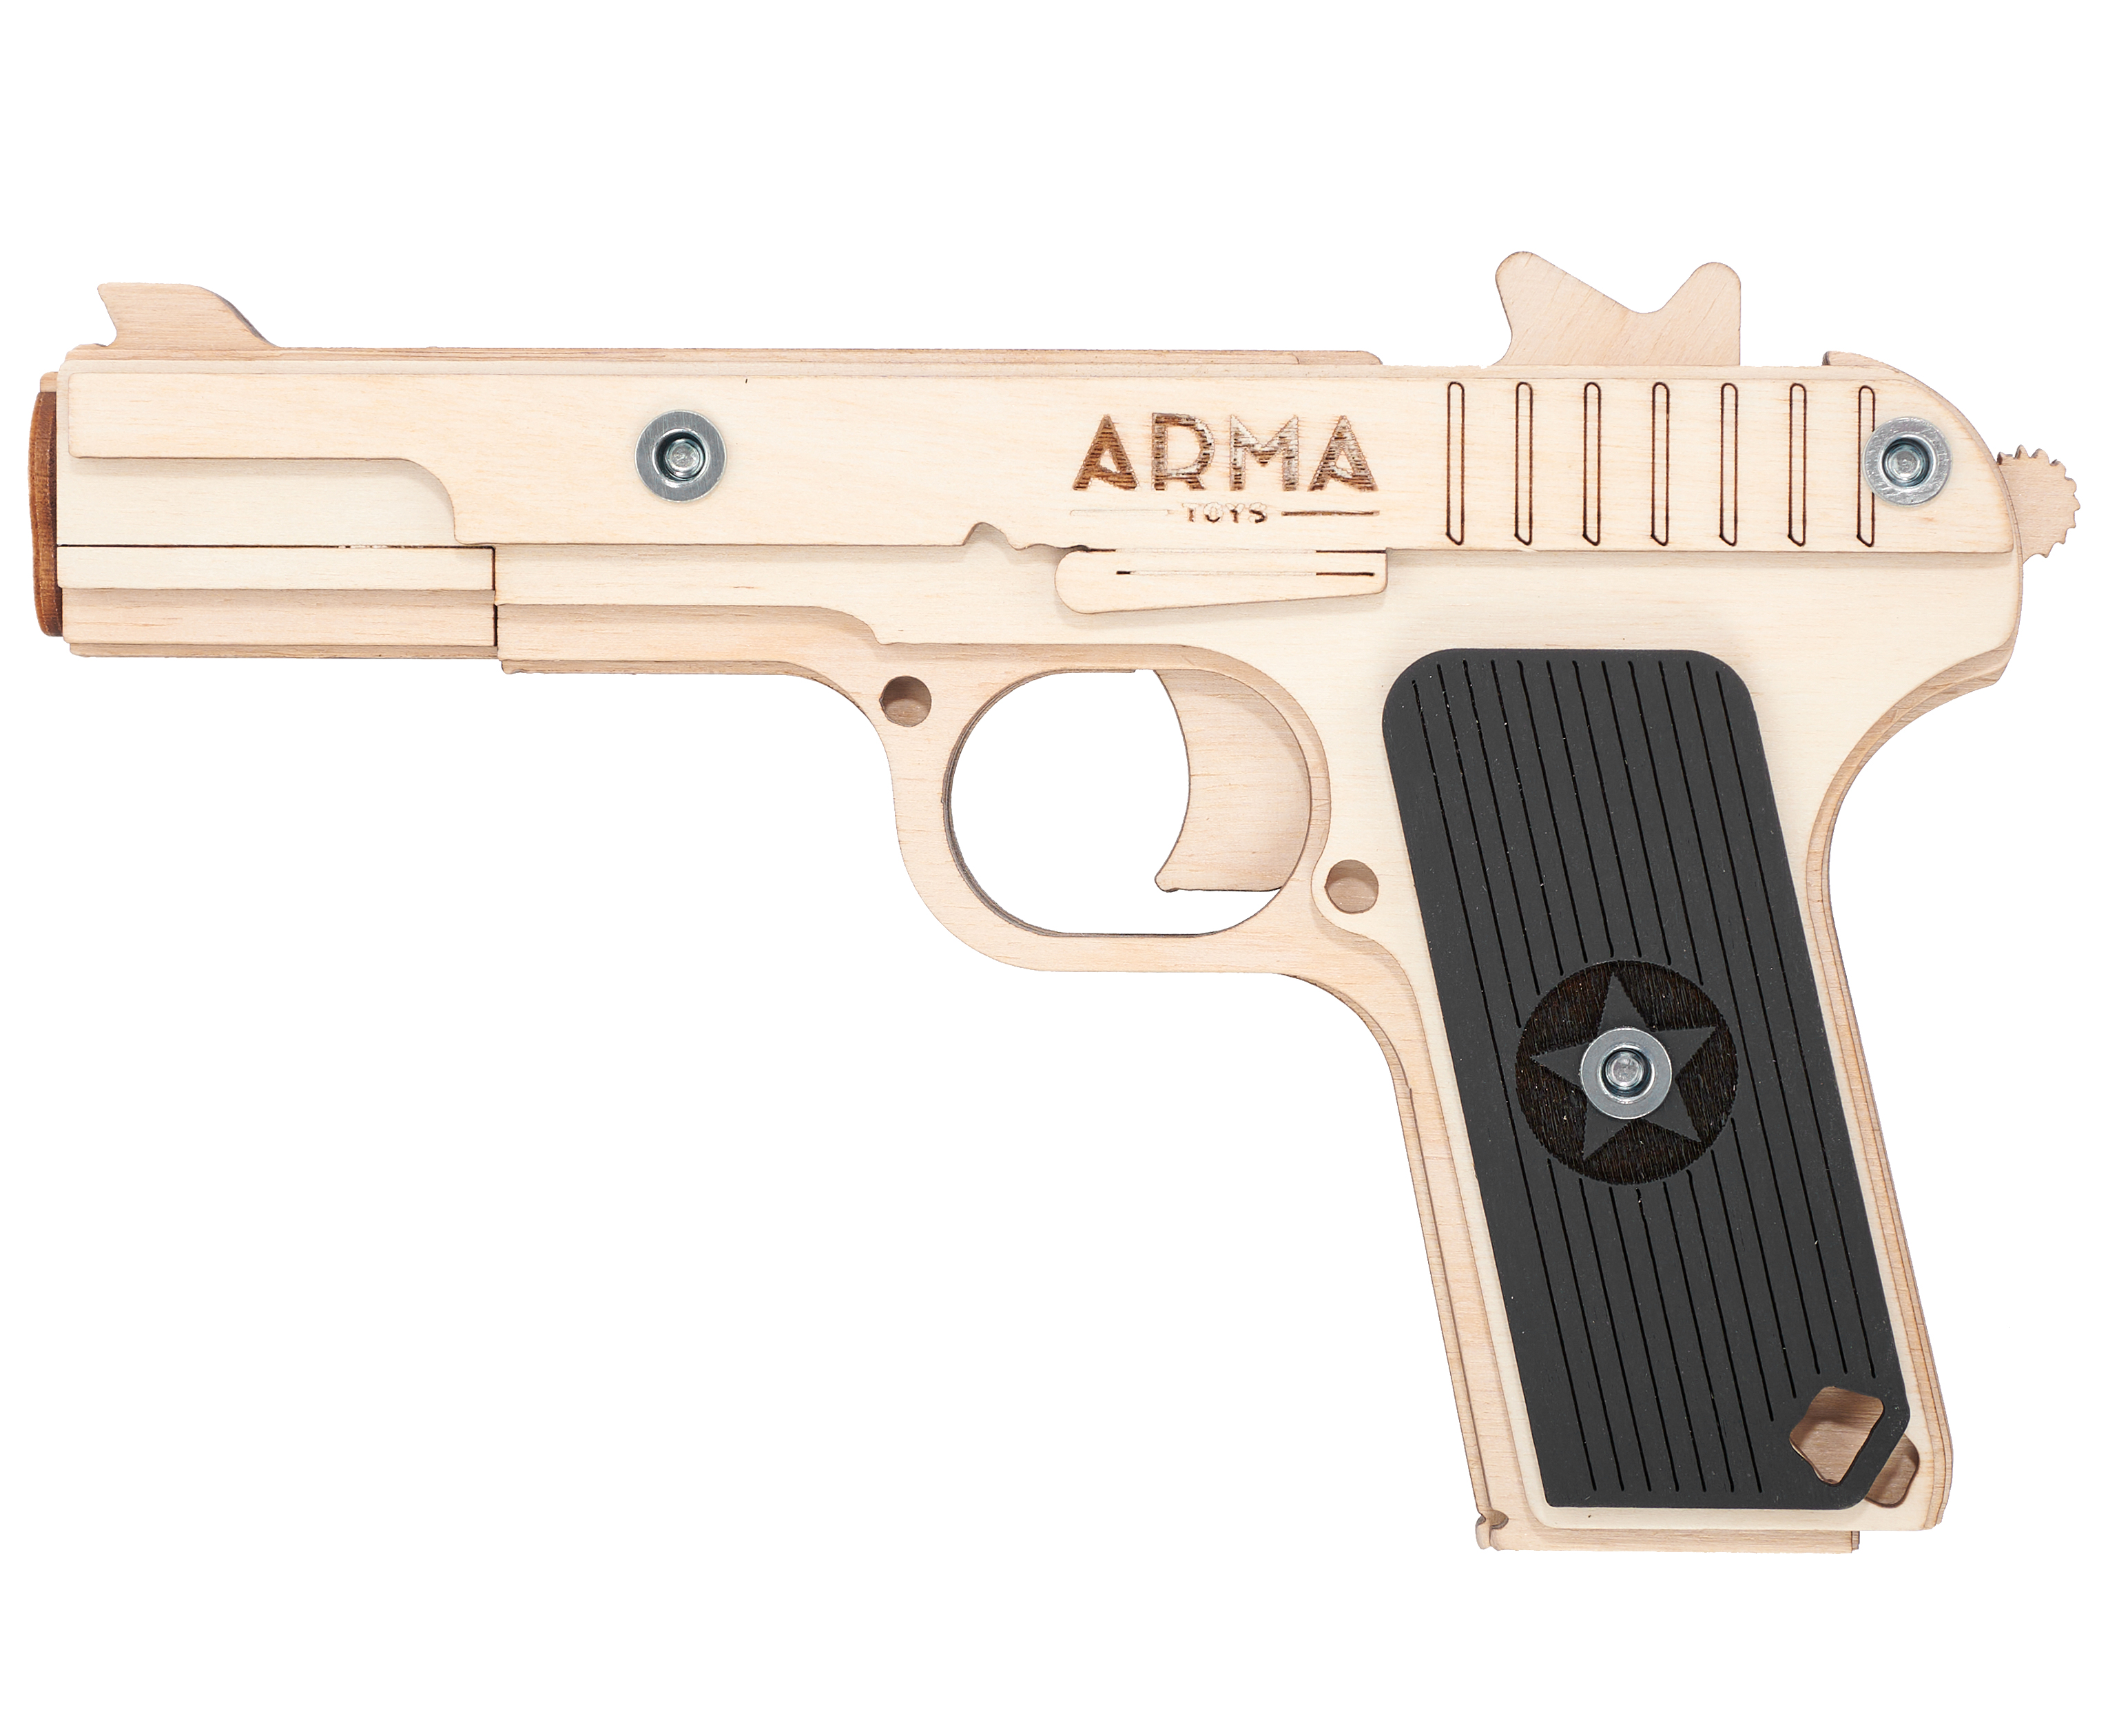 Резинкострел игрушечный Arma toys пистолет ТТ макет, Токарев, AT019 резинкострел arma toys пистолет glock макет compact atl001